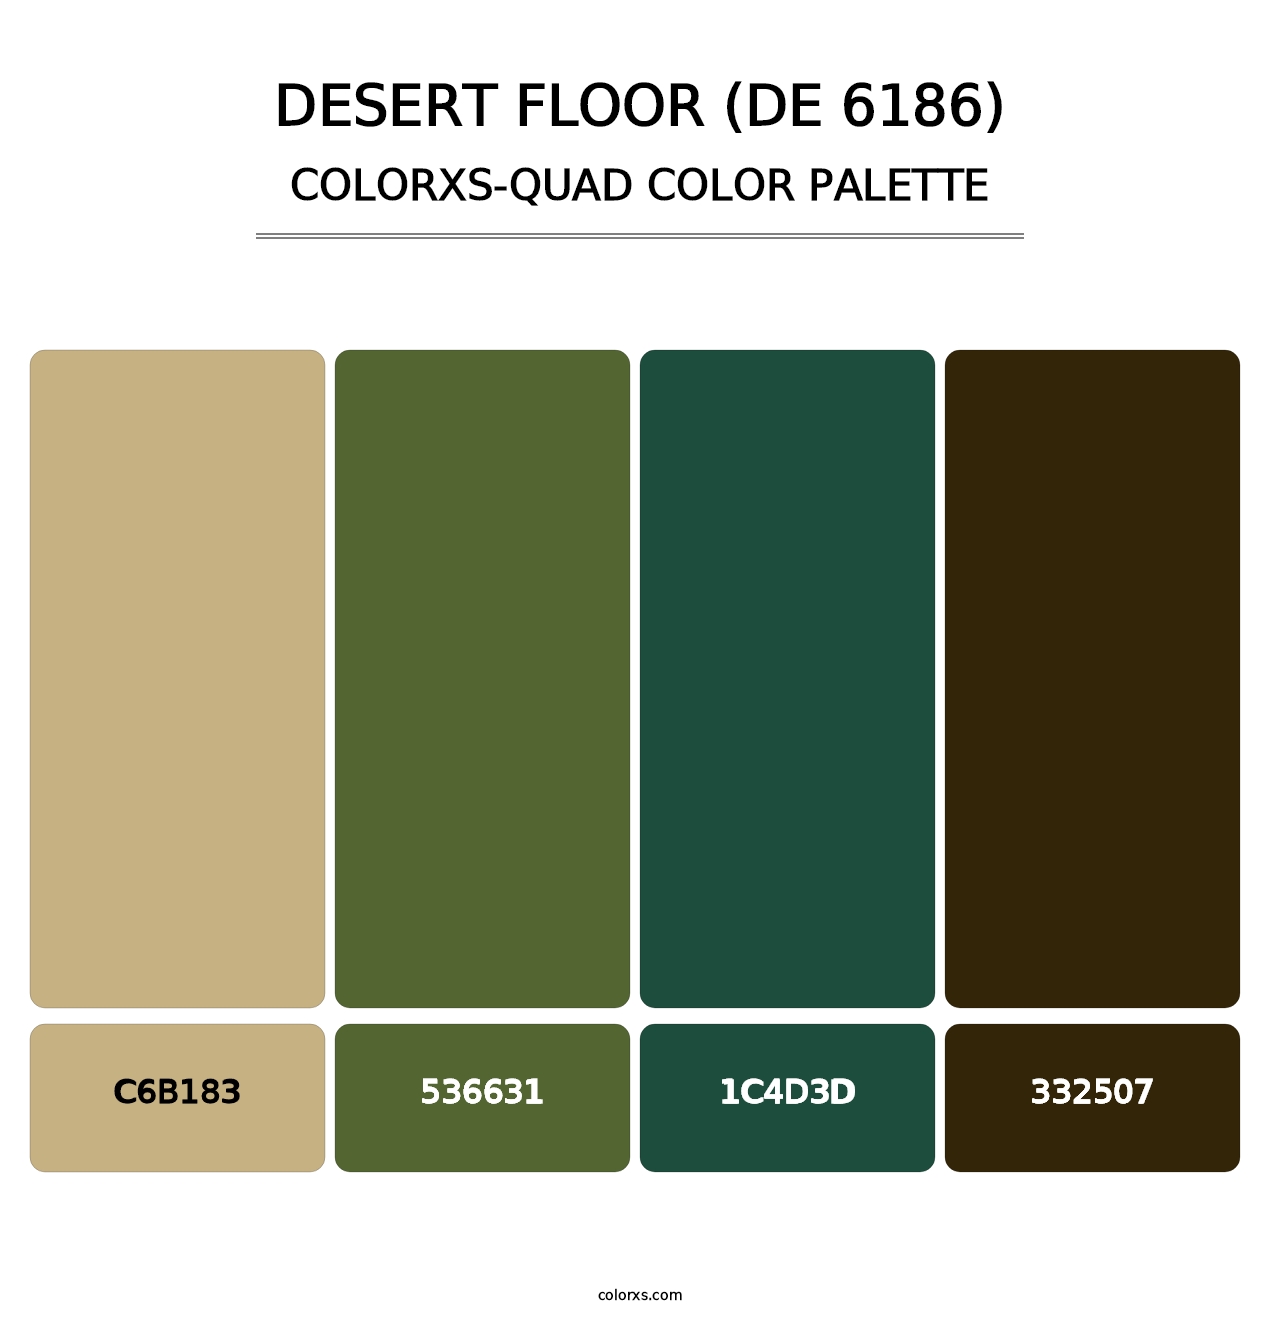 Desert Floor (DE 6186) - Colorxs Quad Palette